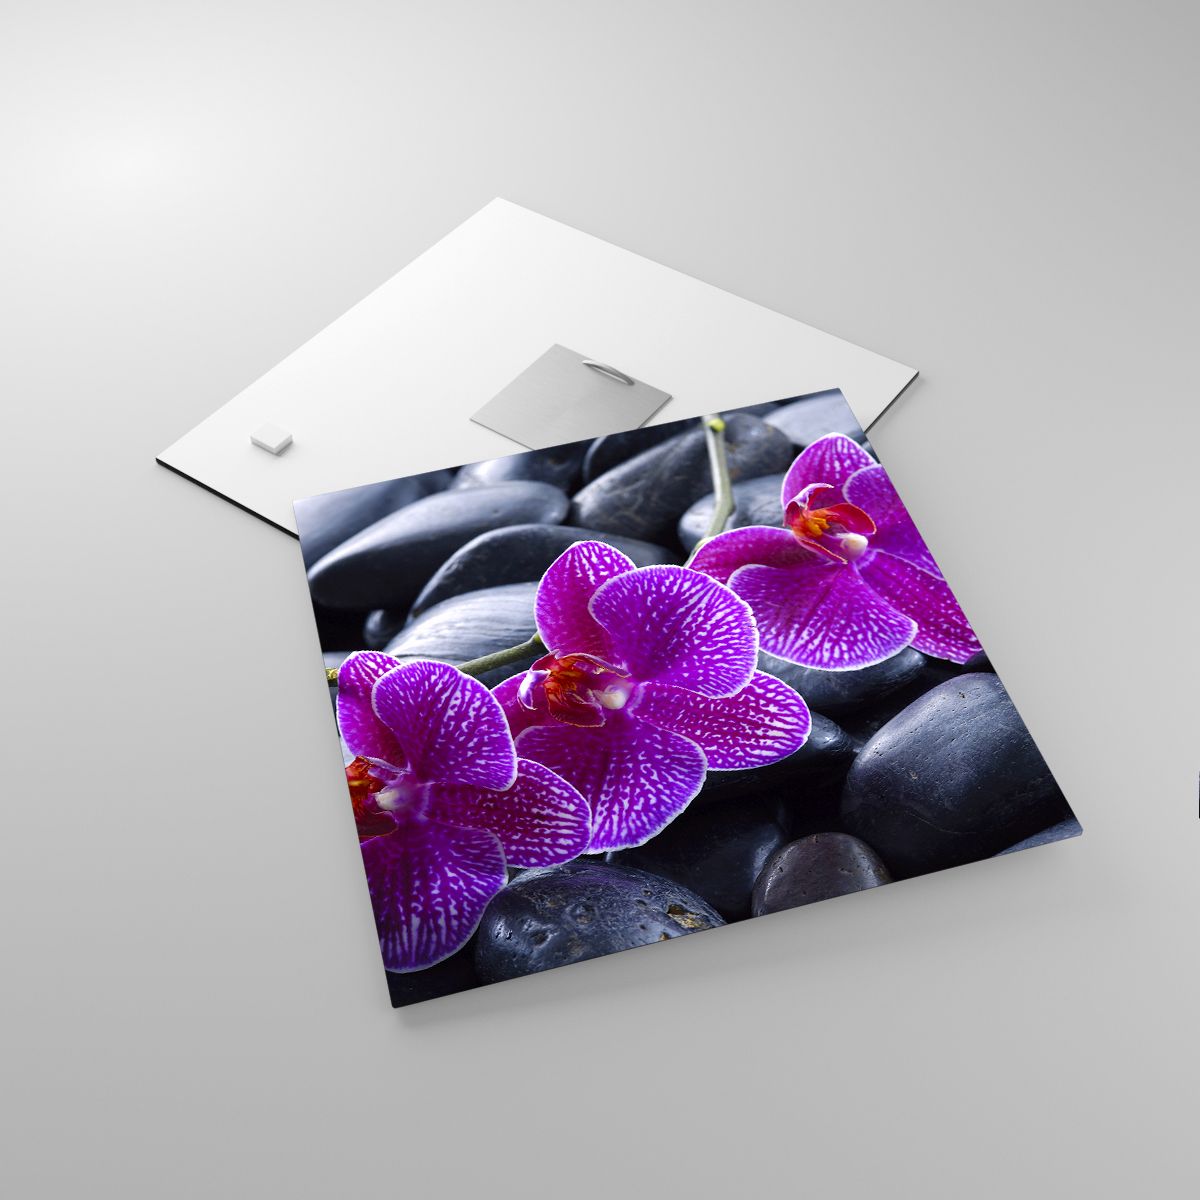 Glasbild Blumen, Glasbild Steine, Glasbild Orchidee, Glasbild Orchidee, Glasbild Spa